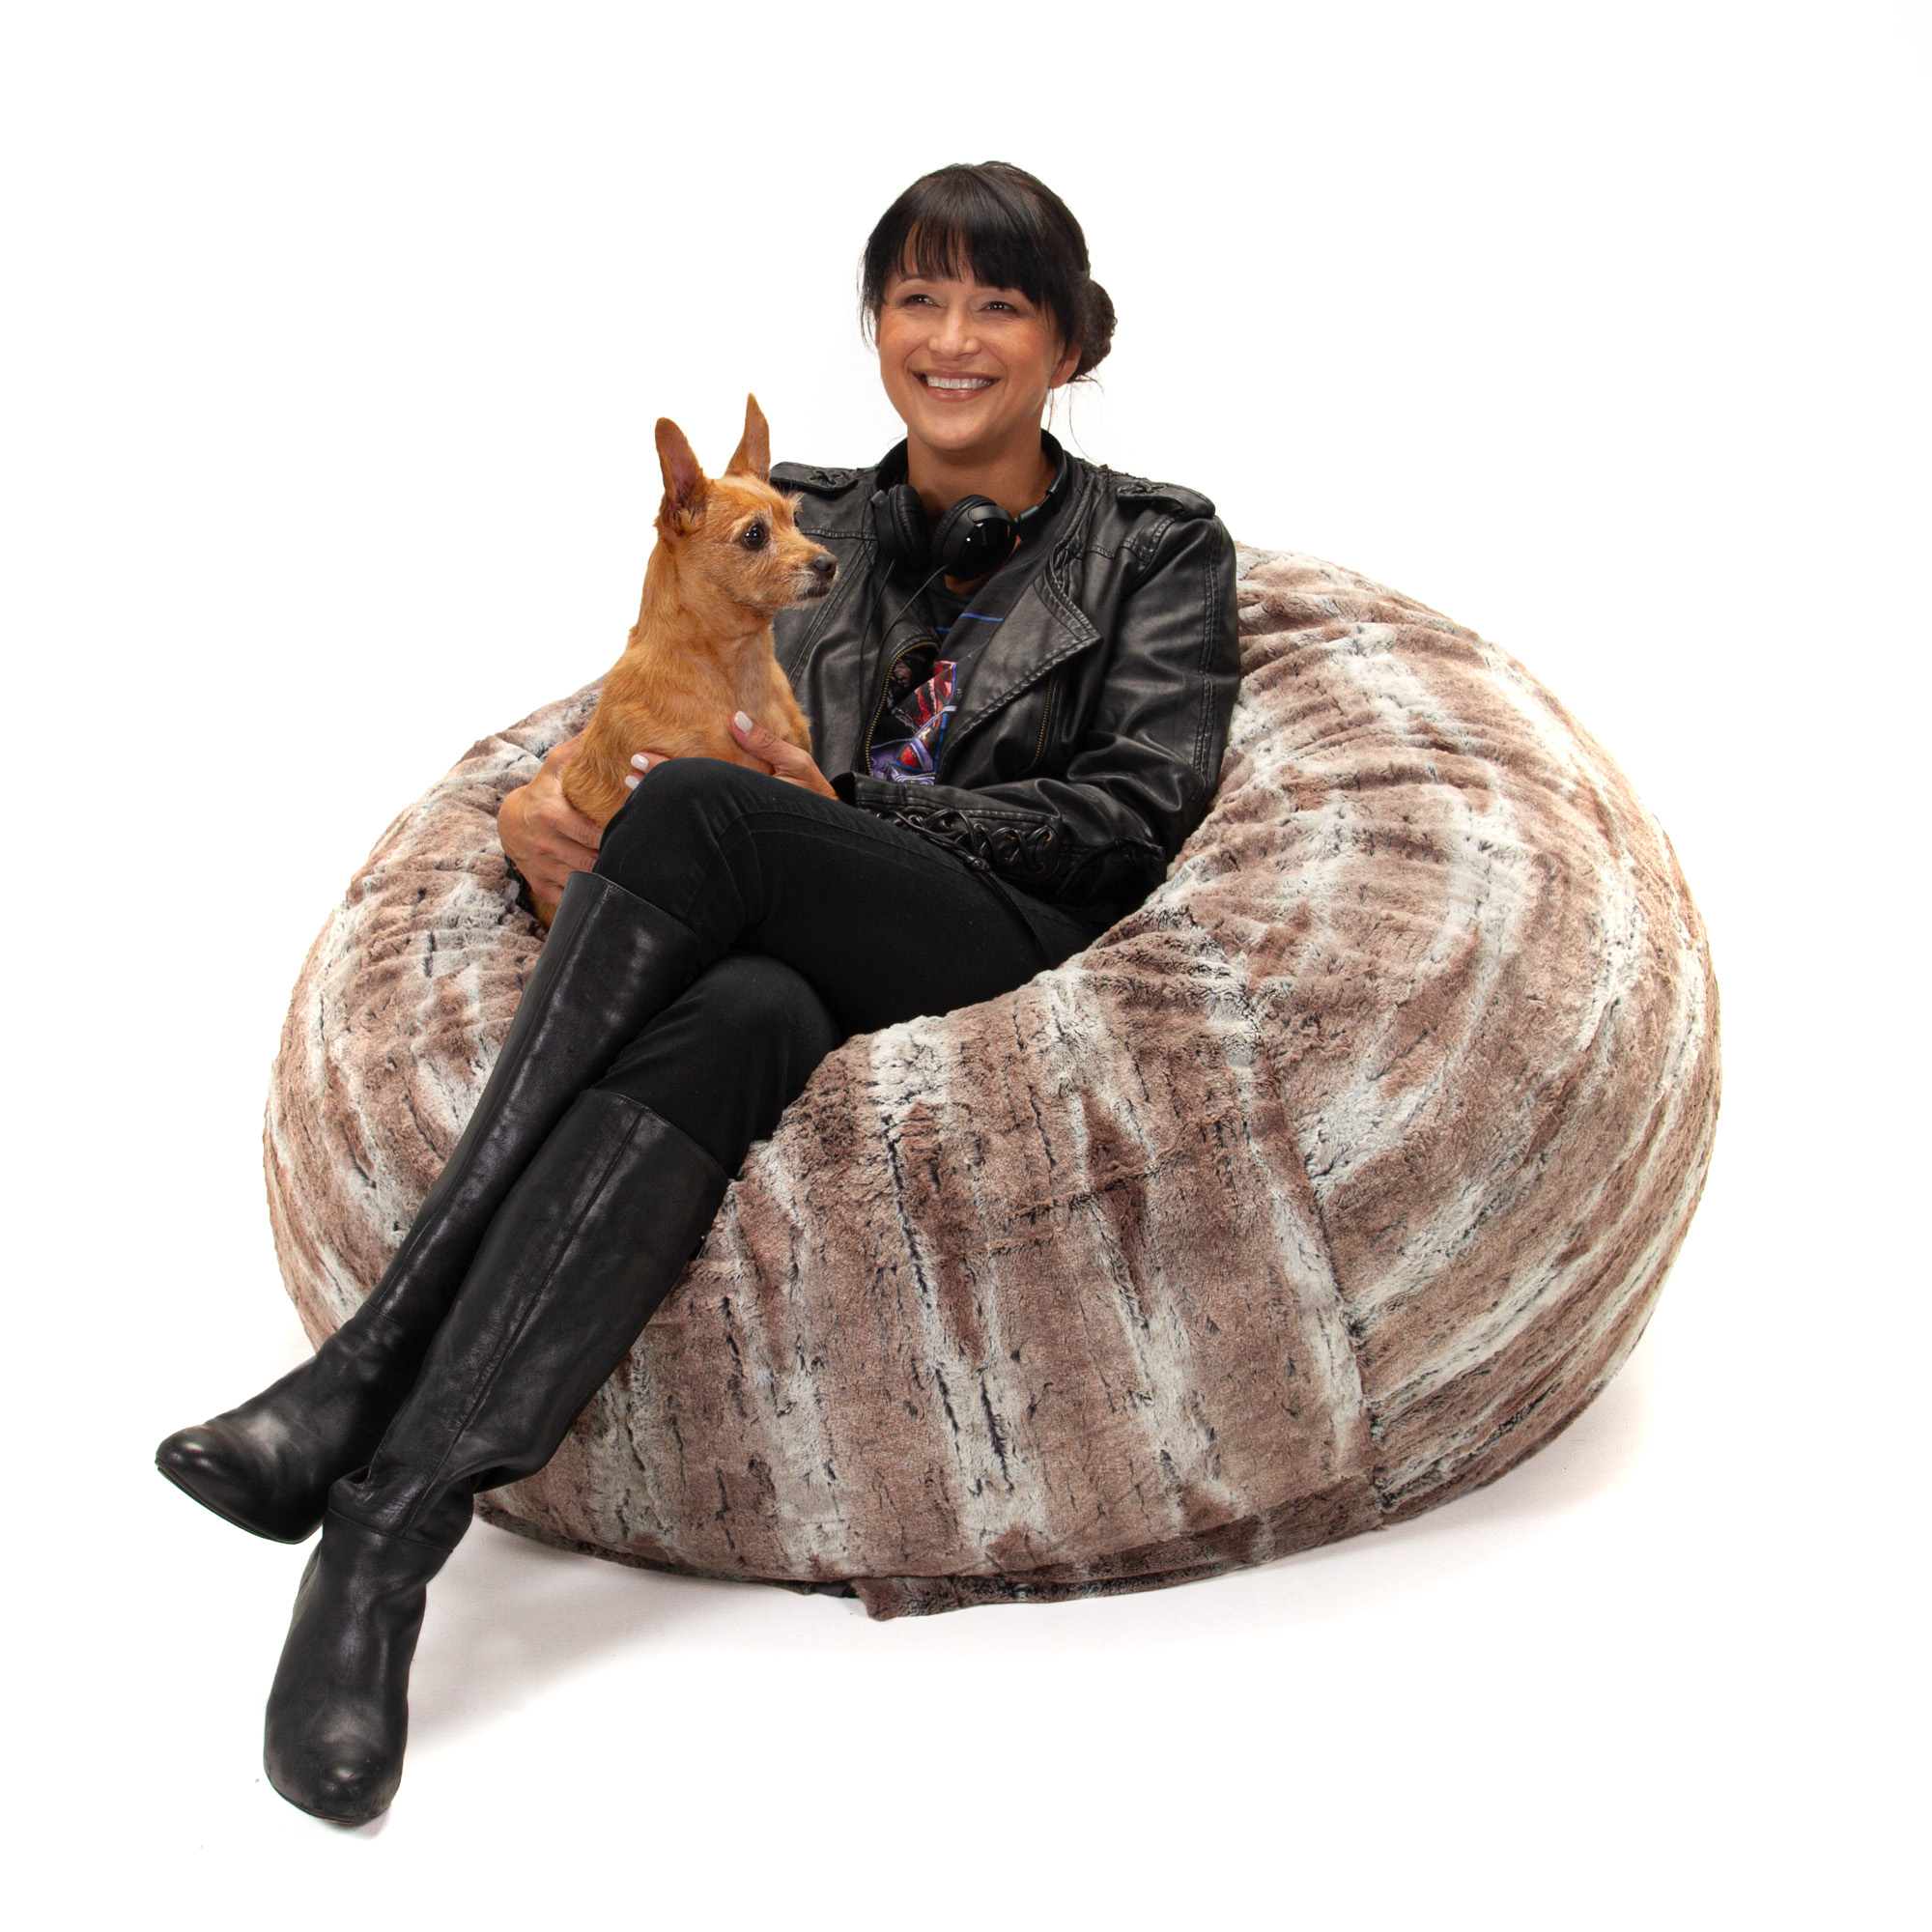 Jaxx Pillow Saxx 5.5 Foot -Huge Bean Bag Floor Pillow and Lounger, Luxe Fur, Silver Fox